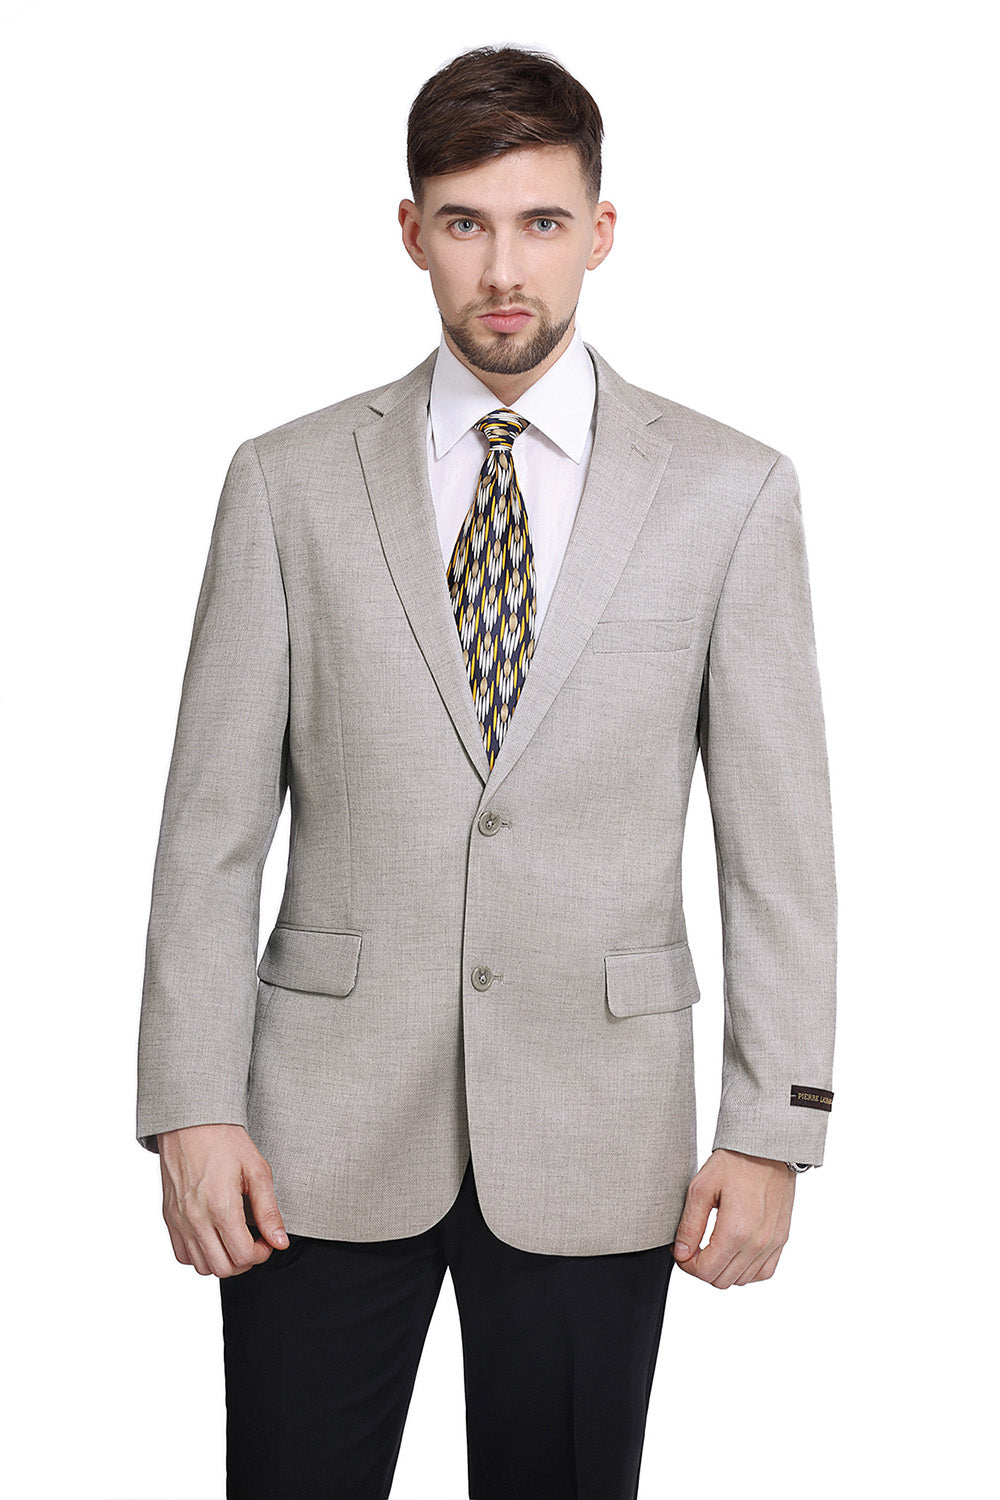 Dove Grey Color Sports Coat